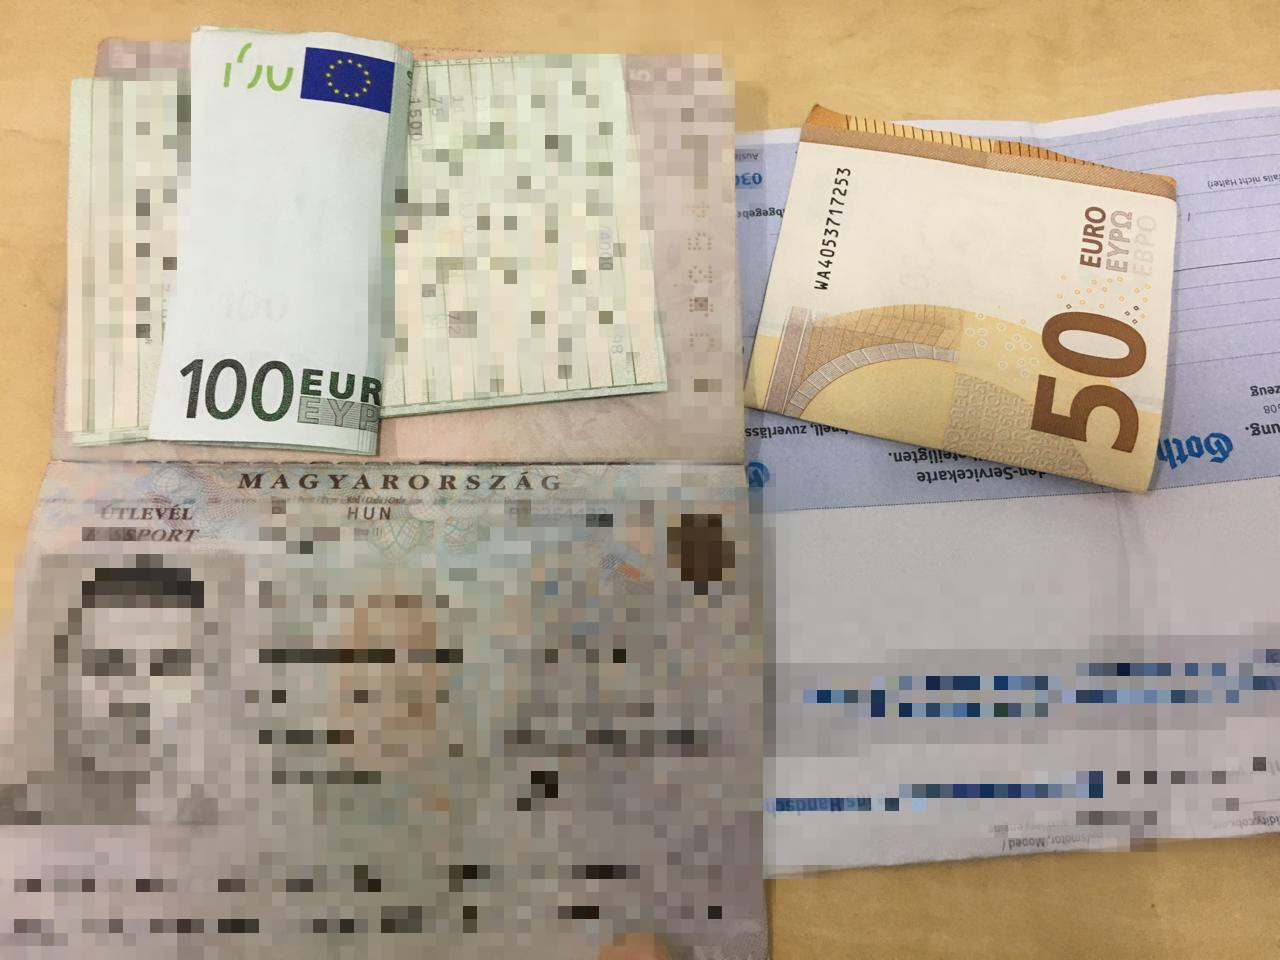 150 євро хабара пропонував прикордонникам угорець за в'їзд без ПЛР-тесту (ФОТО)